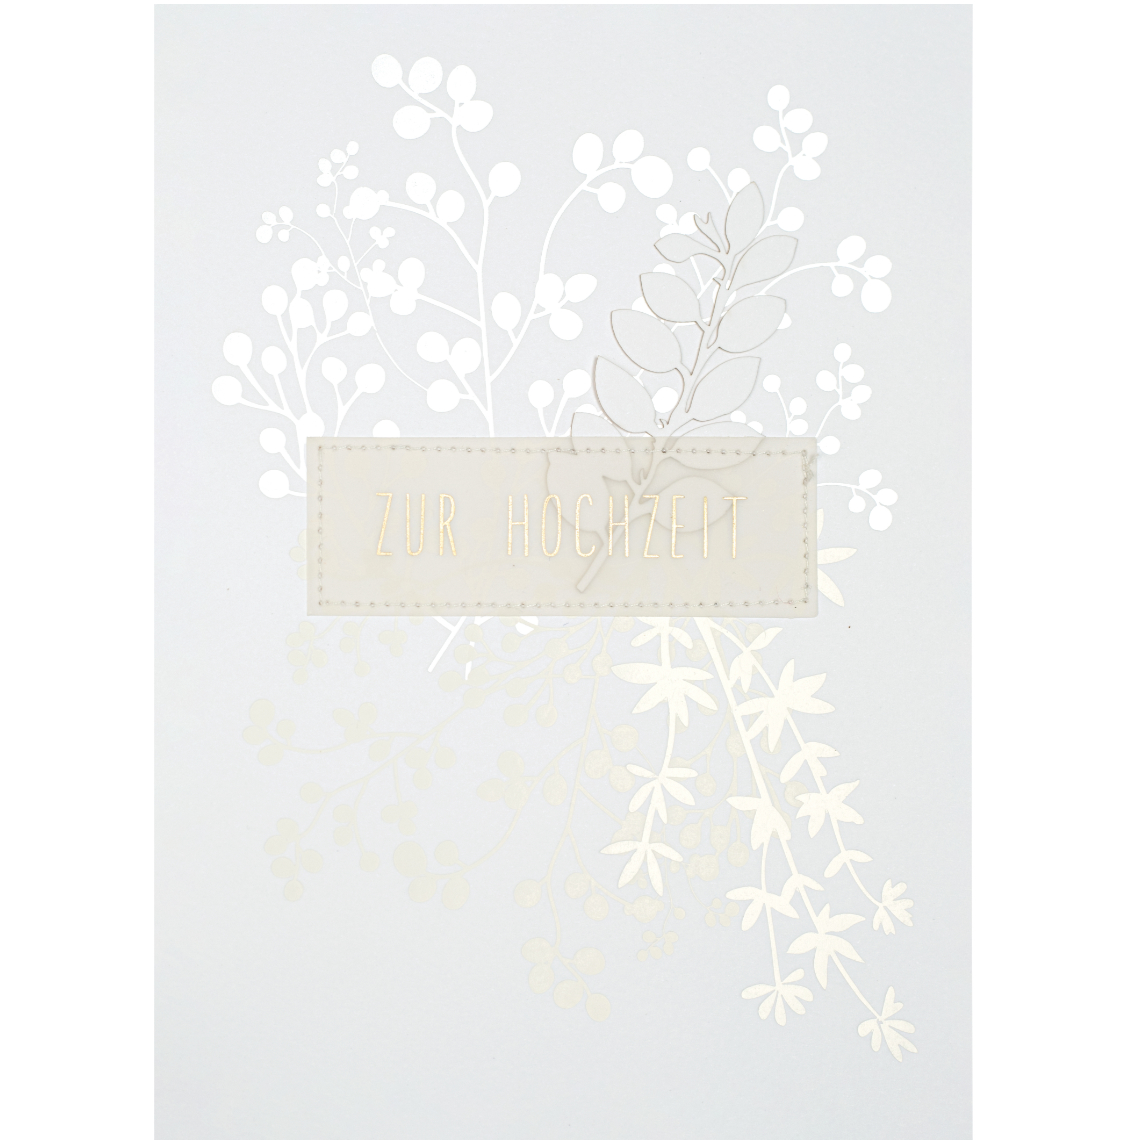 Papierblumenkarte "Zur Hochzeit" XXL